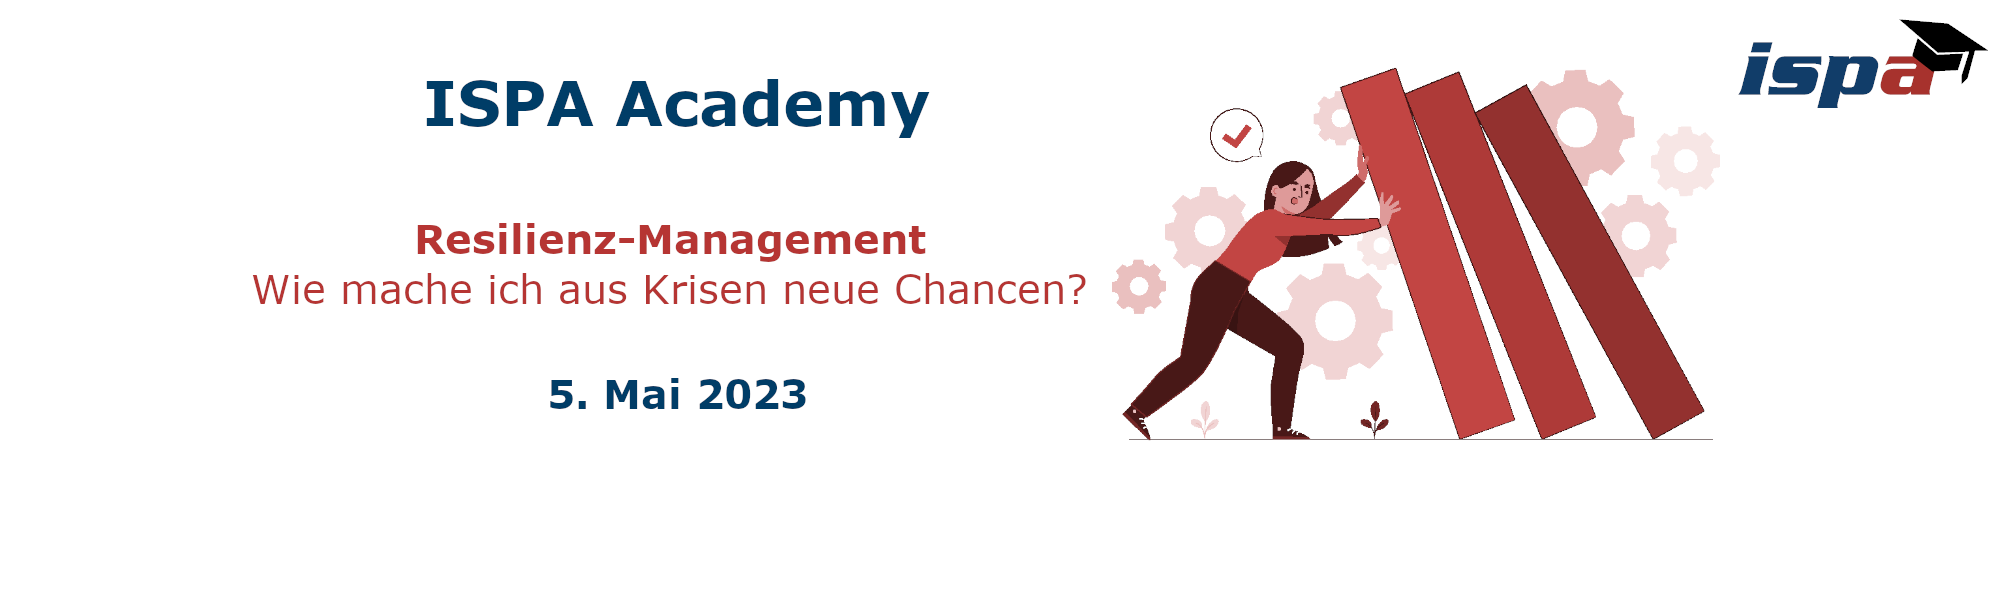 ISPA Academy Resilienz-Management: Wie mache ich aus Krisen neue Chancen? 5. Mai 2023. ISPA-Academy-Logo rechts oben; Frau, die resilient ist und umfallende Wände aufhält.